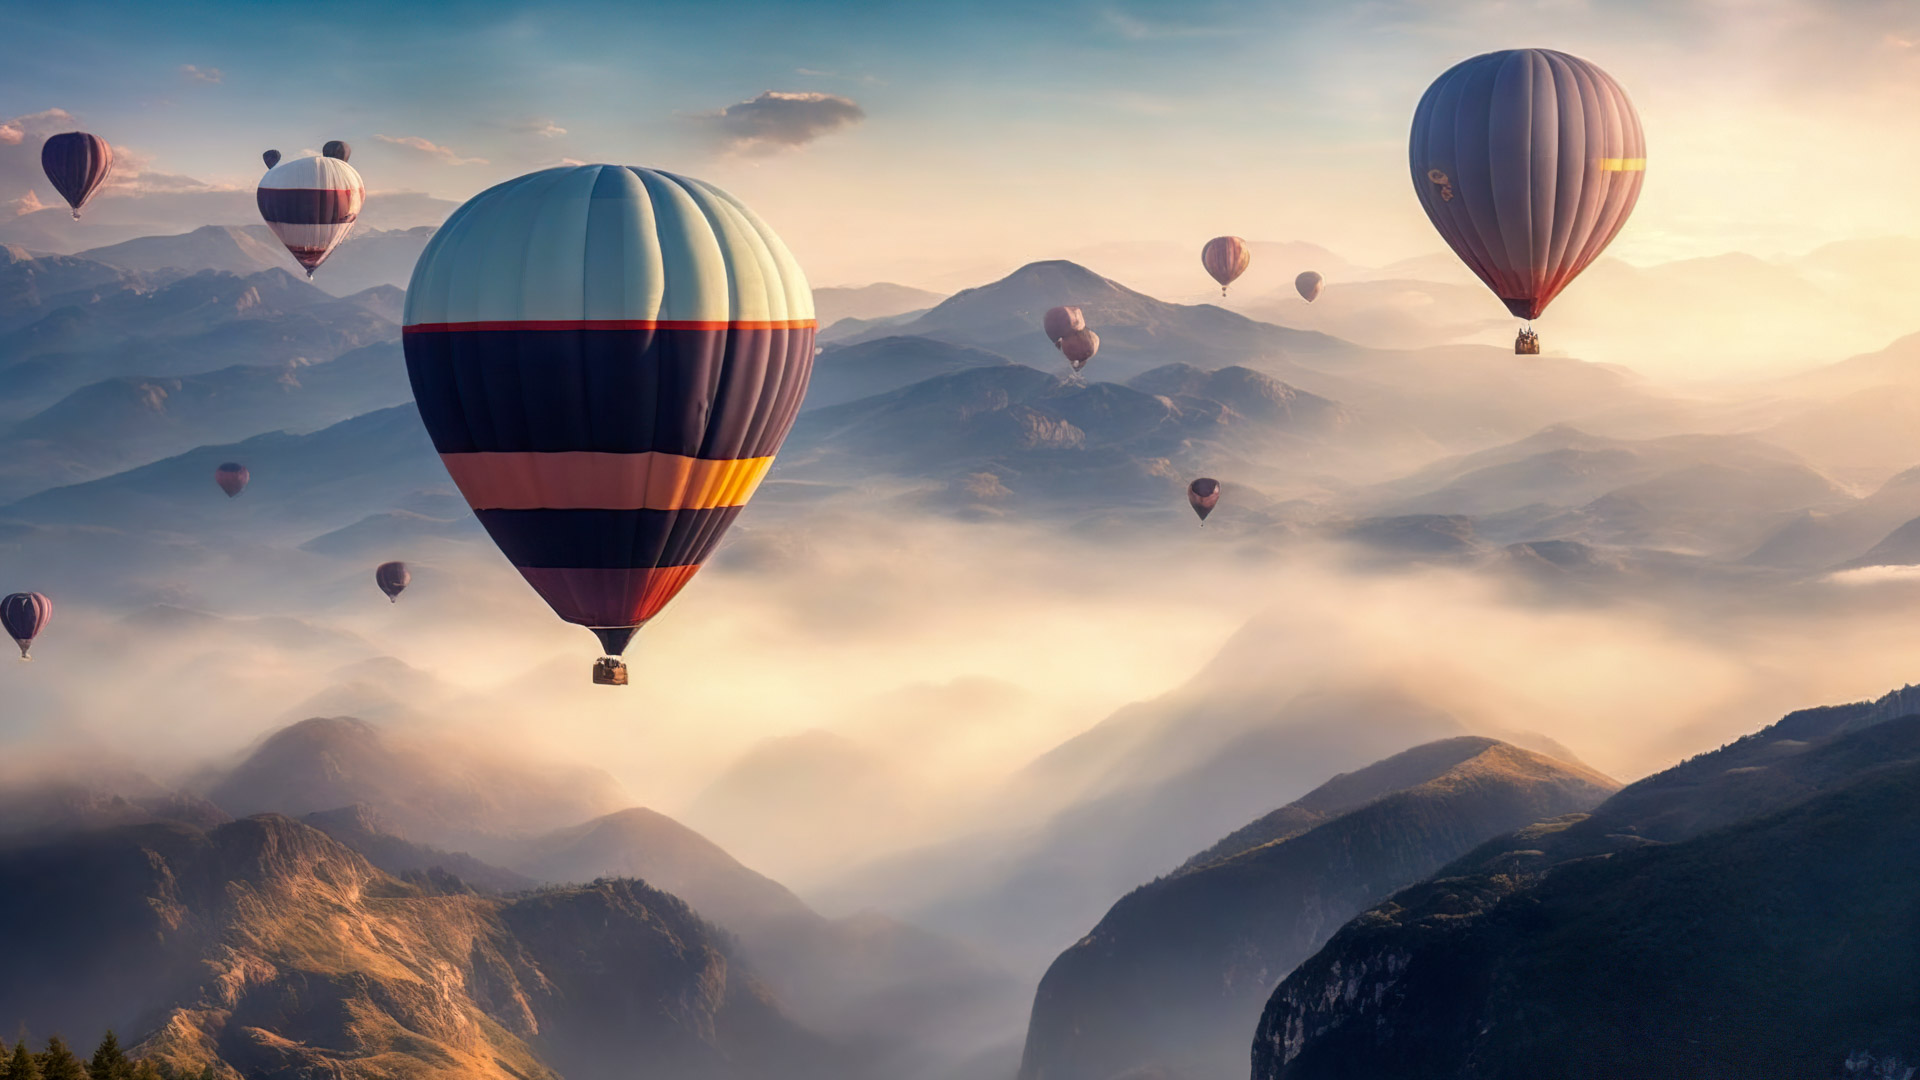 Vivez le surréalisme avec notre fond d'écran de montagne de paysage, présentant un ciel rempli de montgolfières flottant paisiblement au-dessus d'un paysage montagneux brumeux.